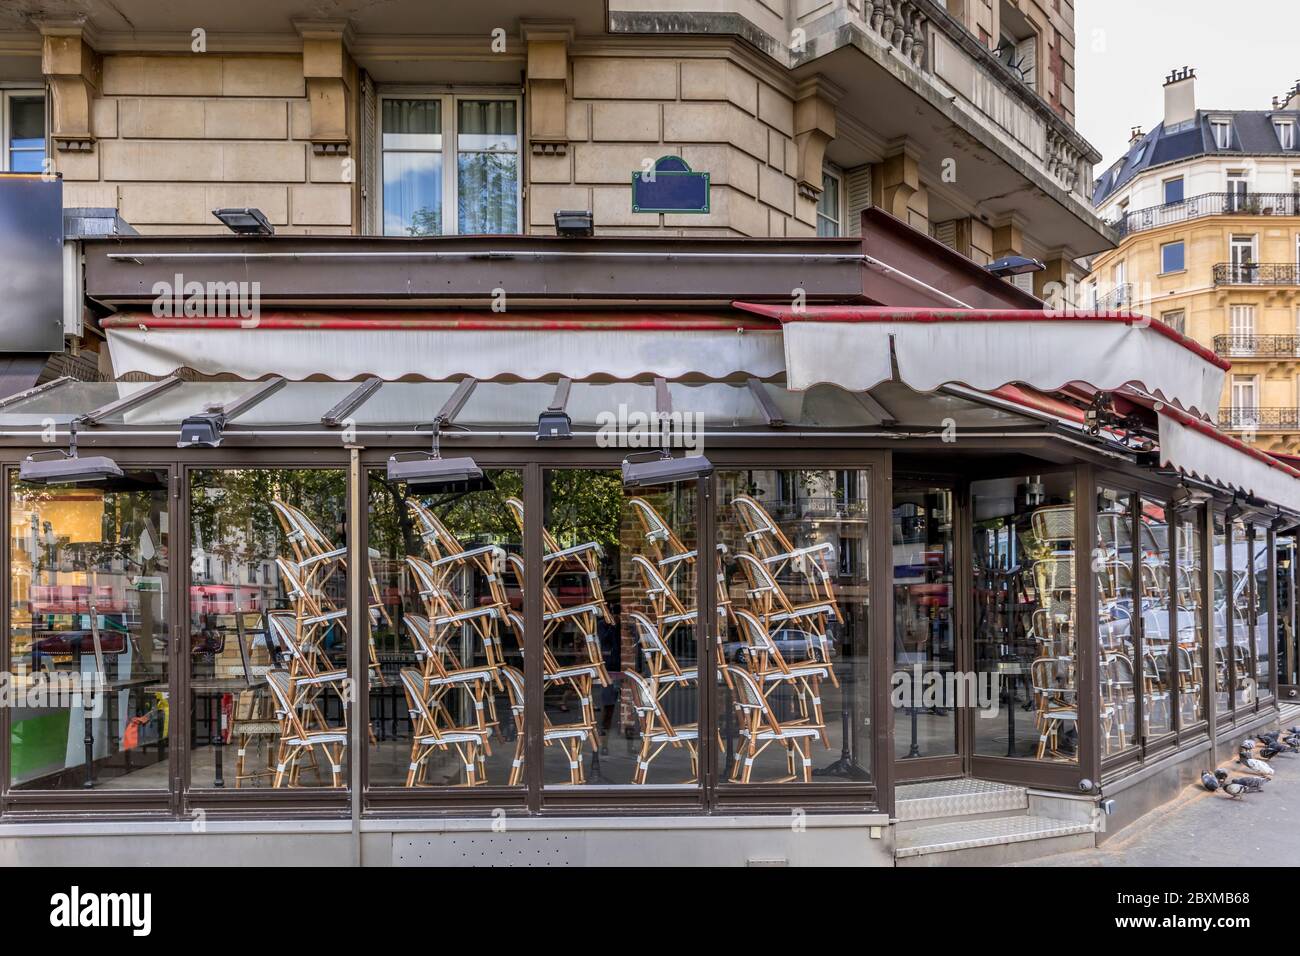 Paris, Frankreich - 17. April 2020: Die Brasserie am Boulevard Saint Germain ist wegen der Epidemie des Coronavirus COVID19 in Paris geschlossen. Leerer Balken, Stockfoto